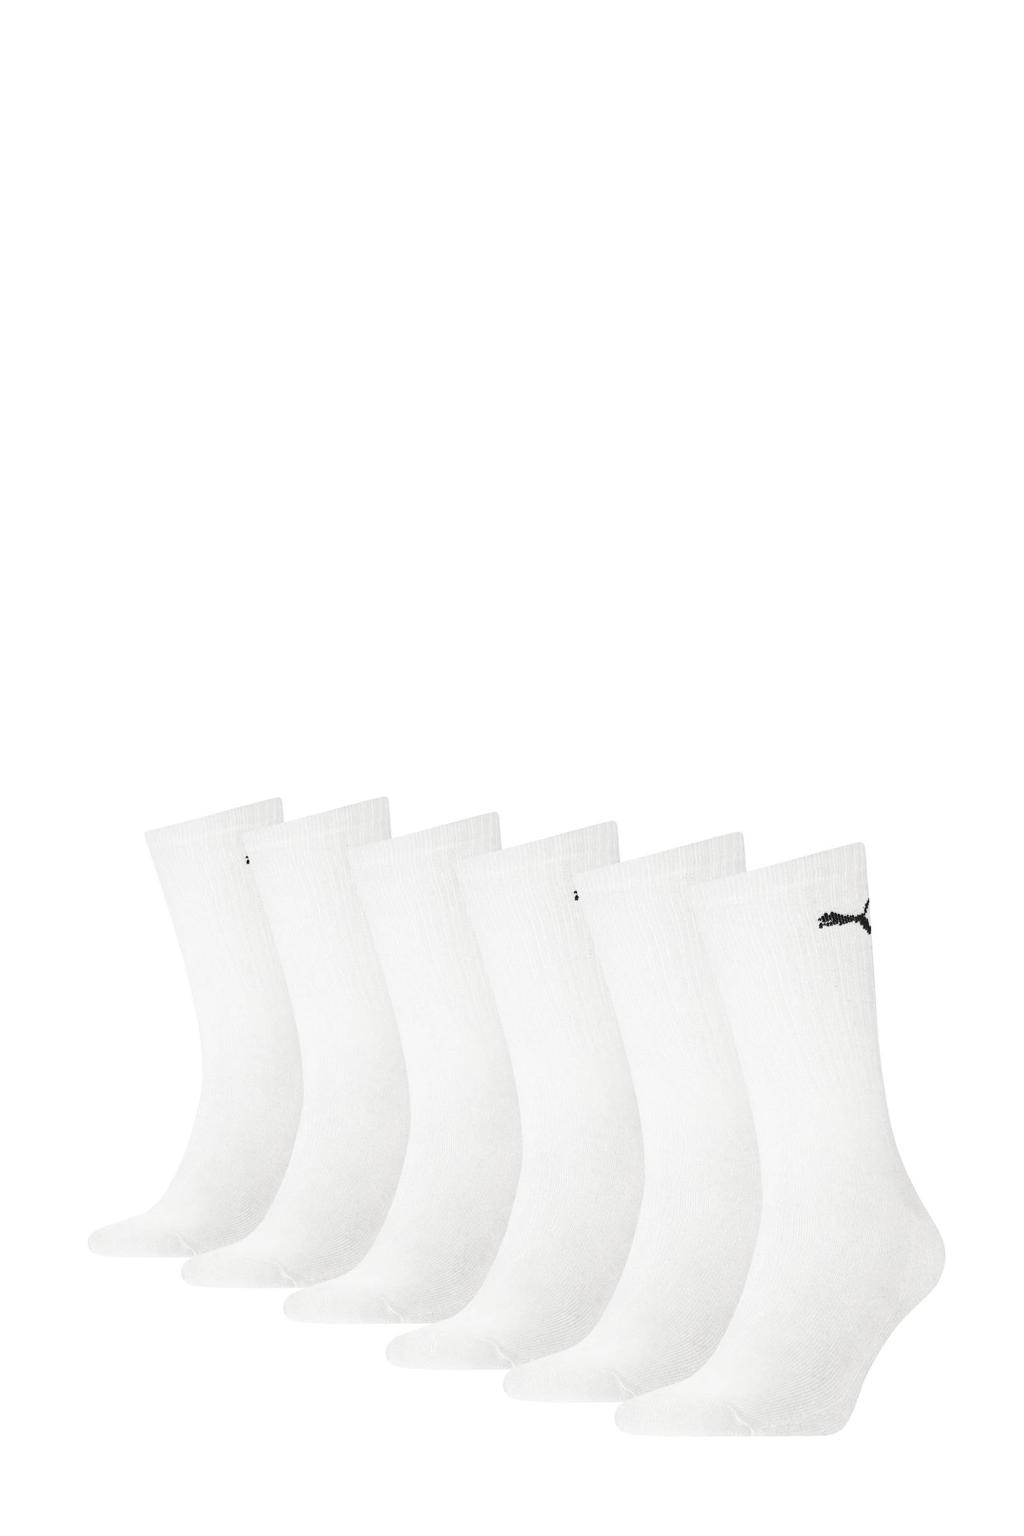 Puma sokken - set van 6 wit